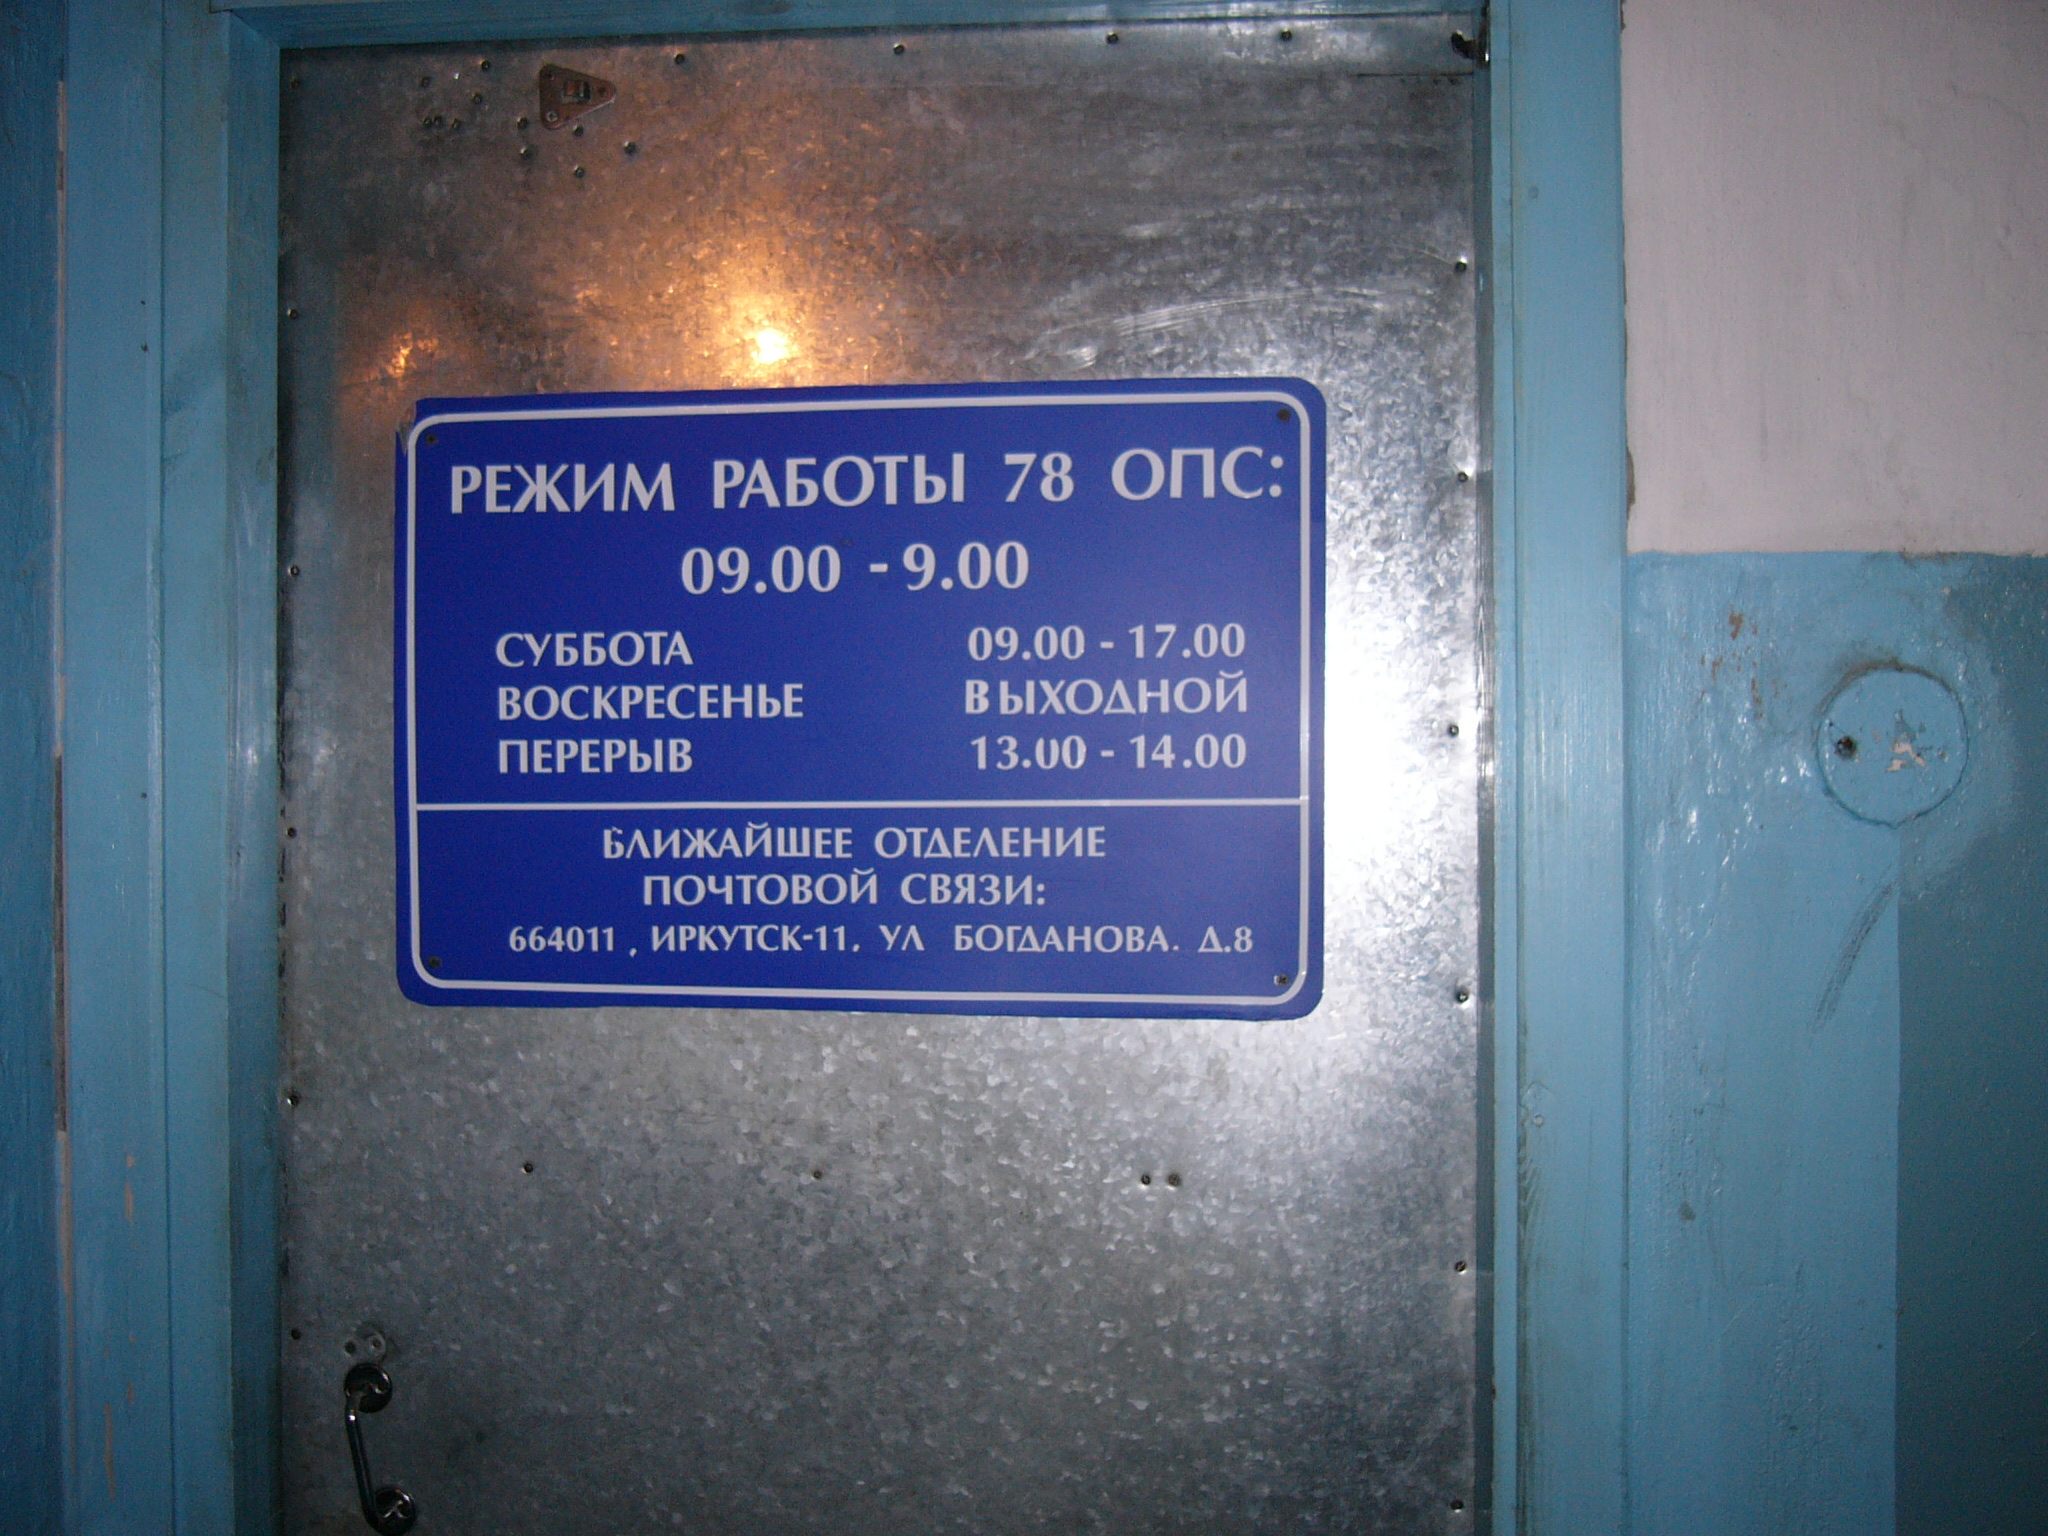 ВХОД, отделение почтовой связи 664078, Иркутская обл., Иркутск